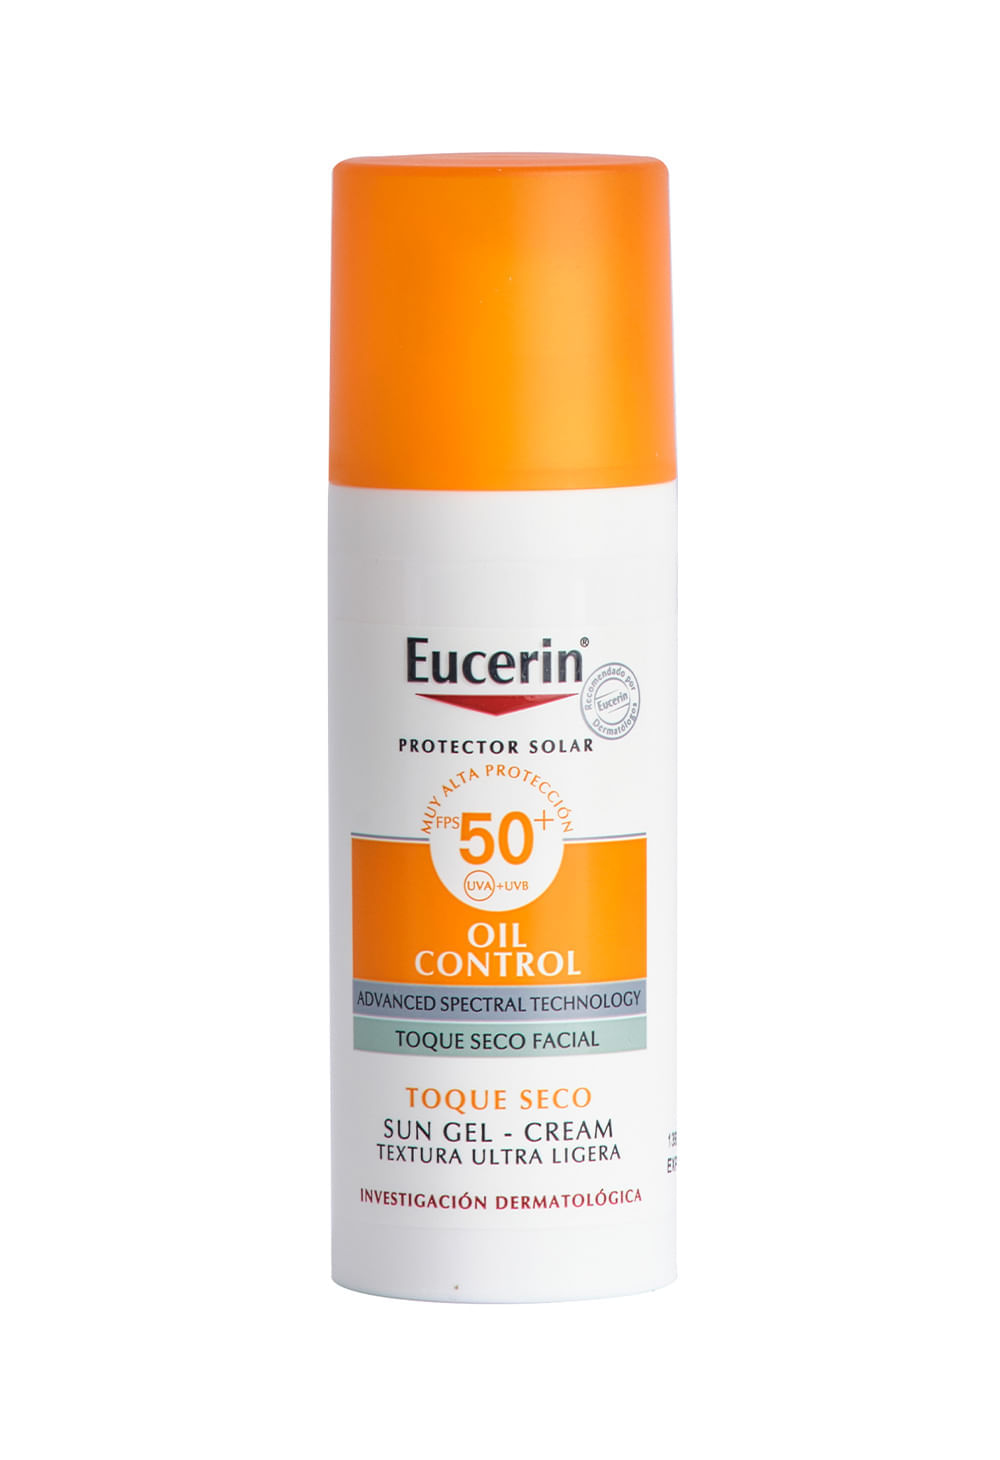 Eucerin Oil Control Sun Gel FPS 50+